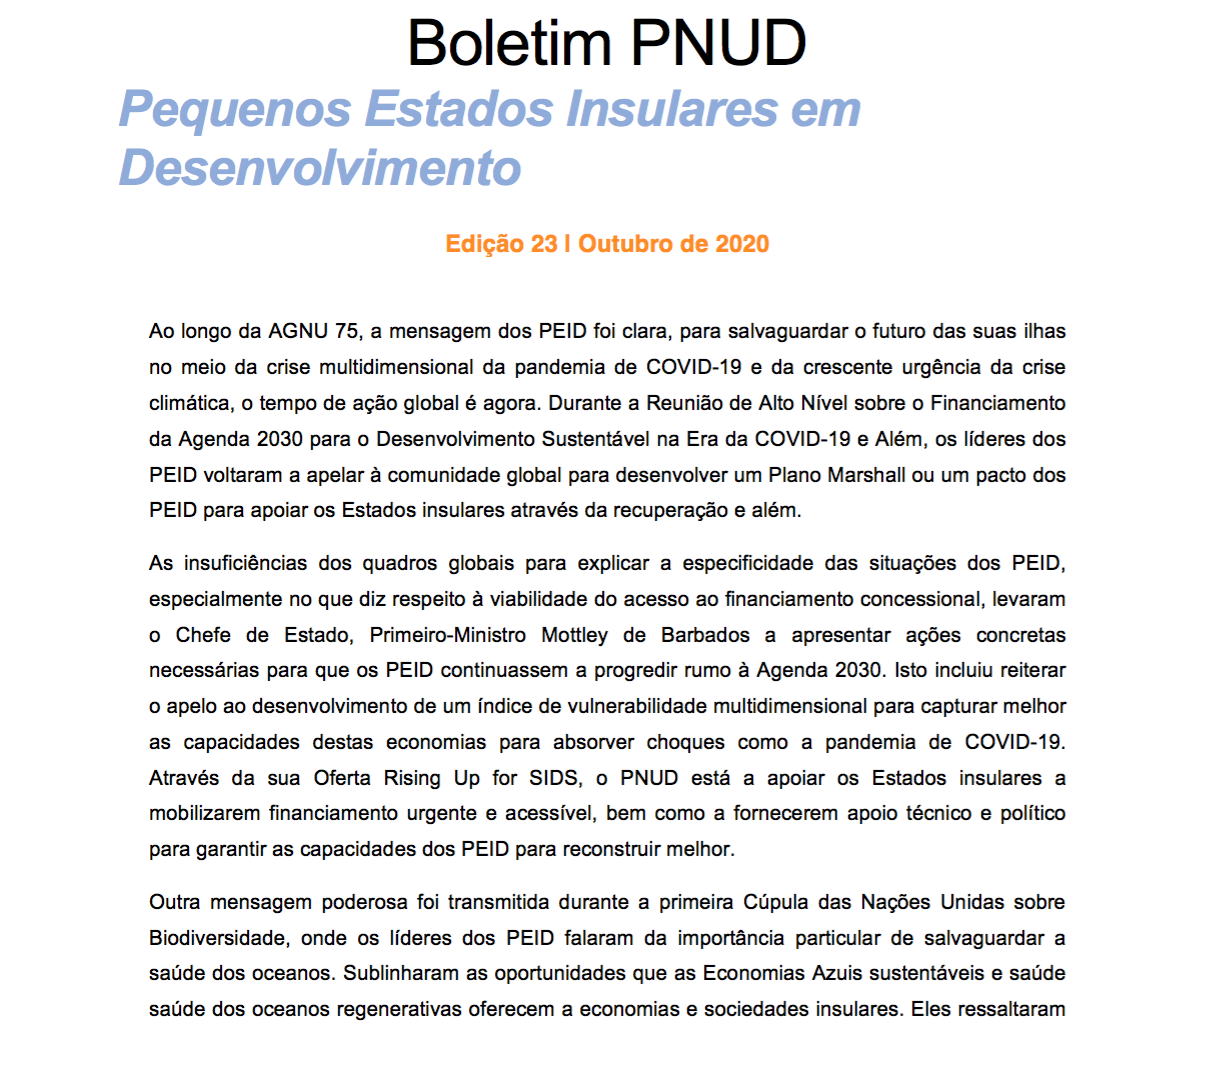 Boletim PNUD - Pequenos Estados Insulares em Desenvolvimento 23-10-2020